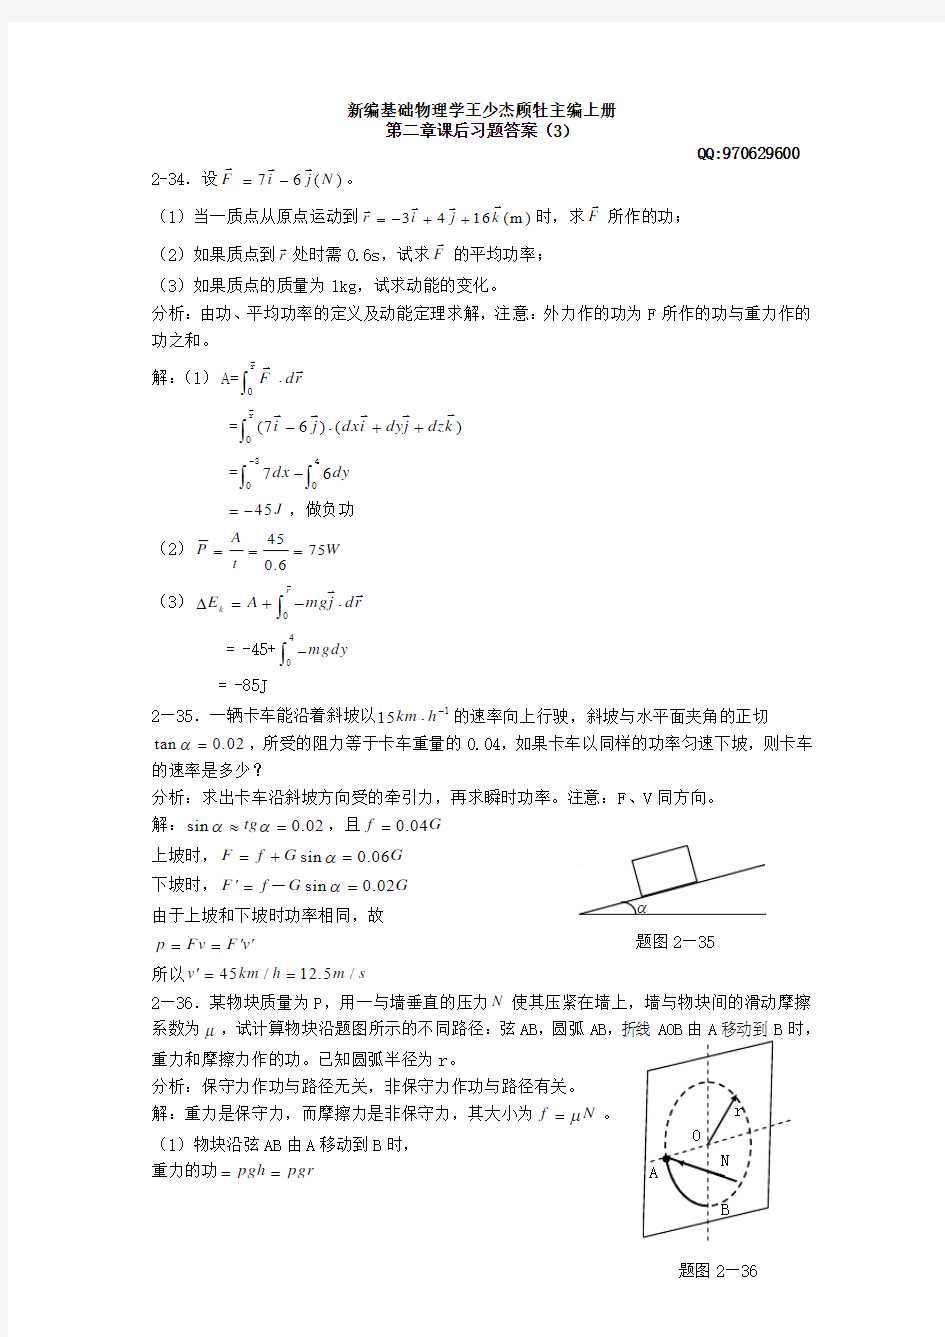 《新编基础物理学》(上册)第二章习题解答和分析3